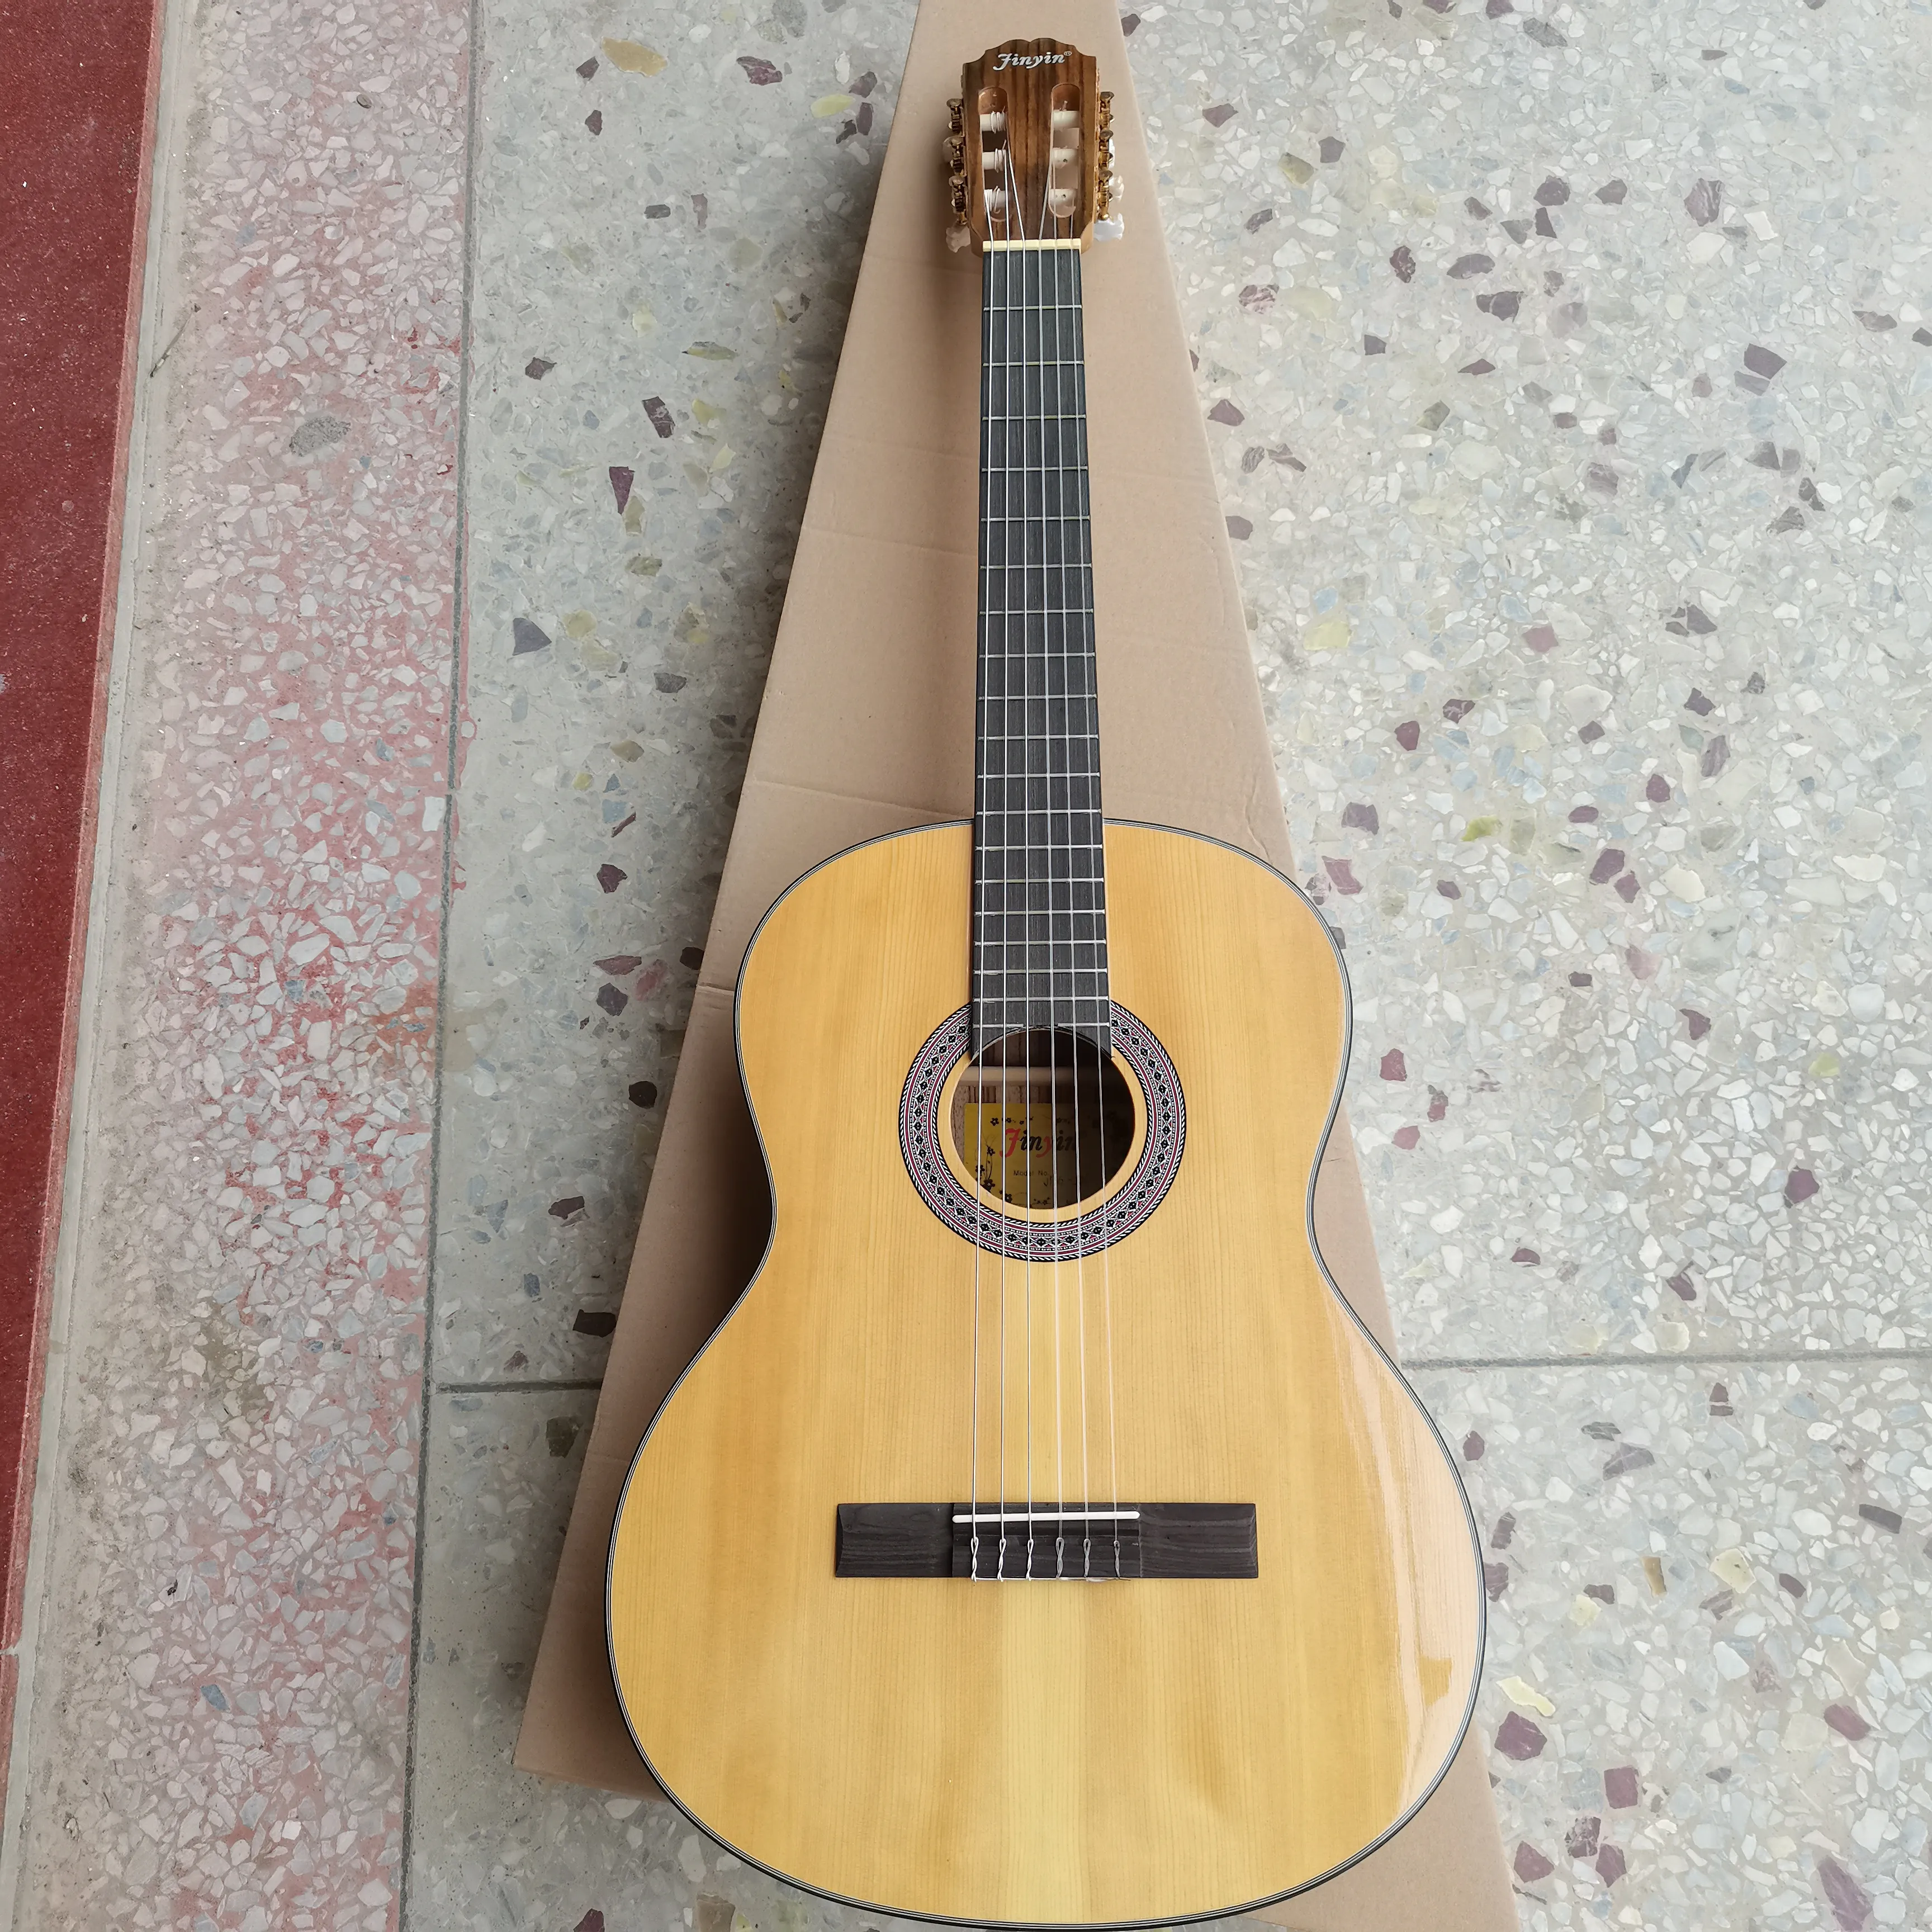 Solid Cedar Top klassieke gitaar lage prijs 39 inch flamenco akoestische gitaar nylon snaren folk klassieke akoestische gitaar gemaakt in China